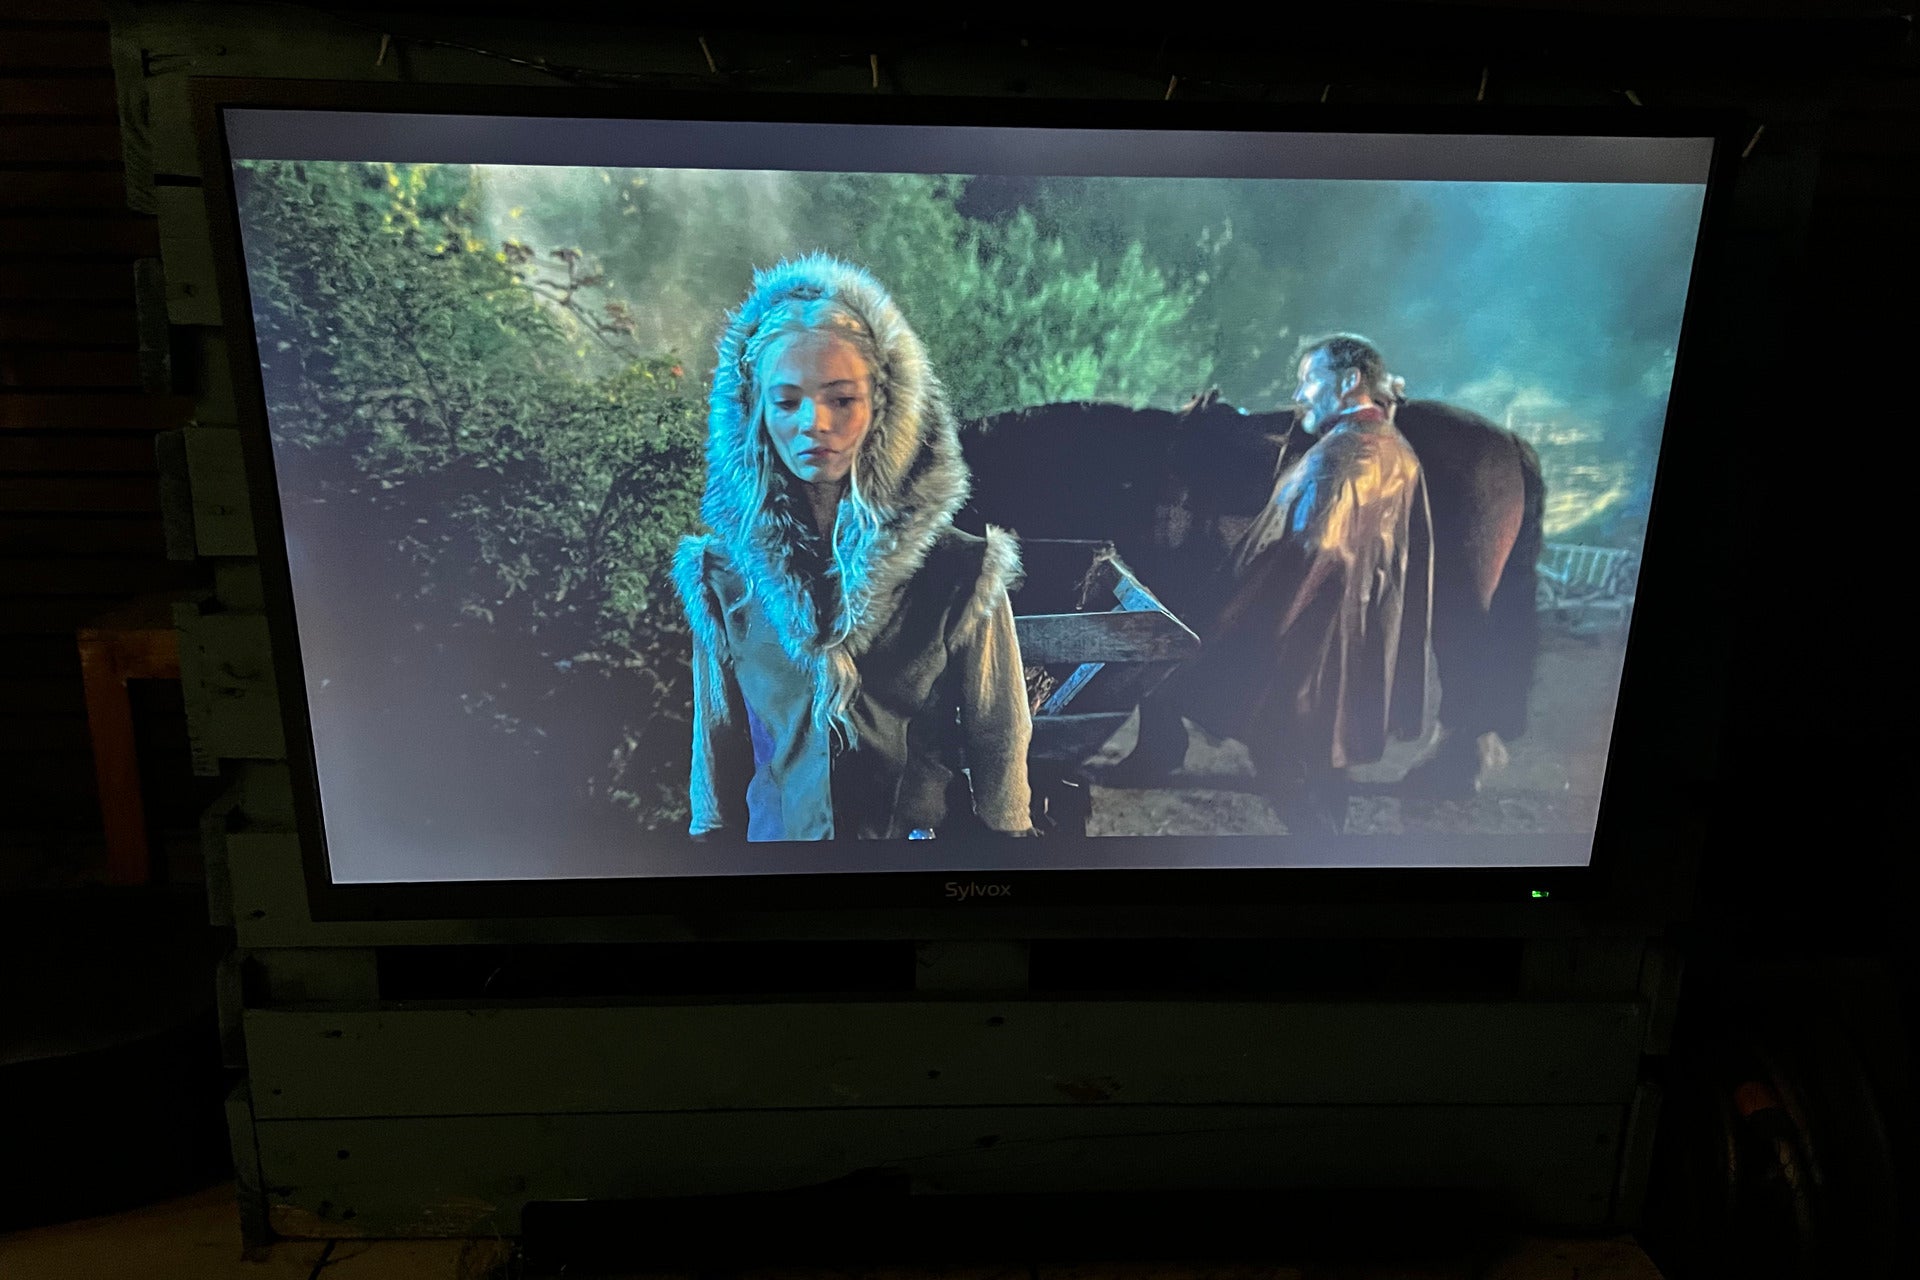 Sylvox 43-Zoll Deck Pro Outdoor-Fernseher The Witcher bei Nacht